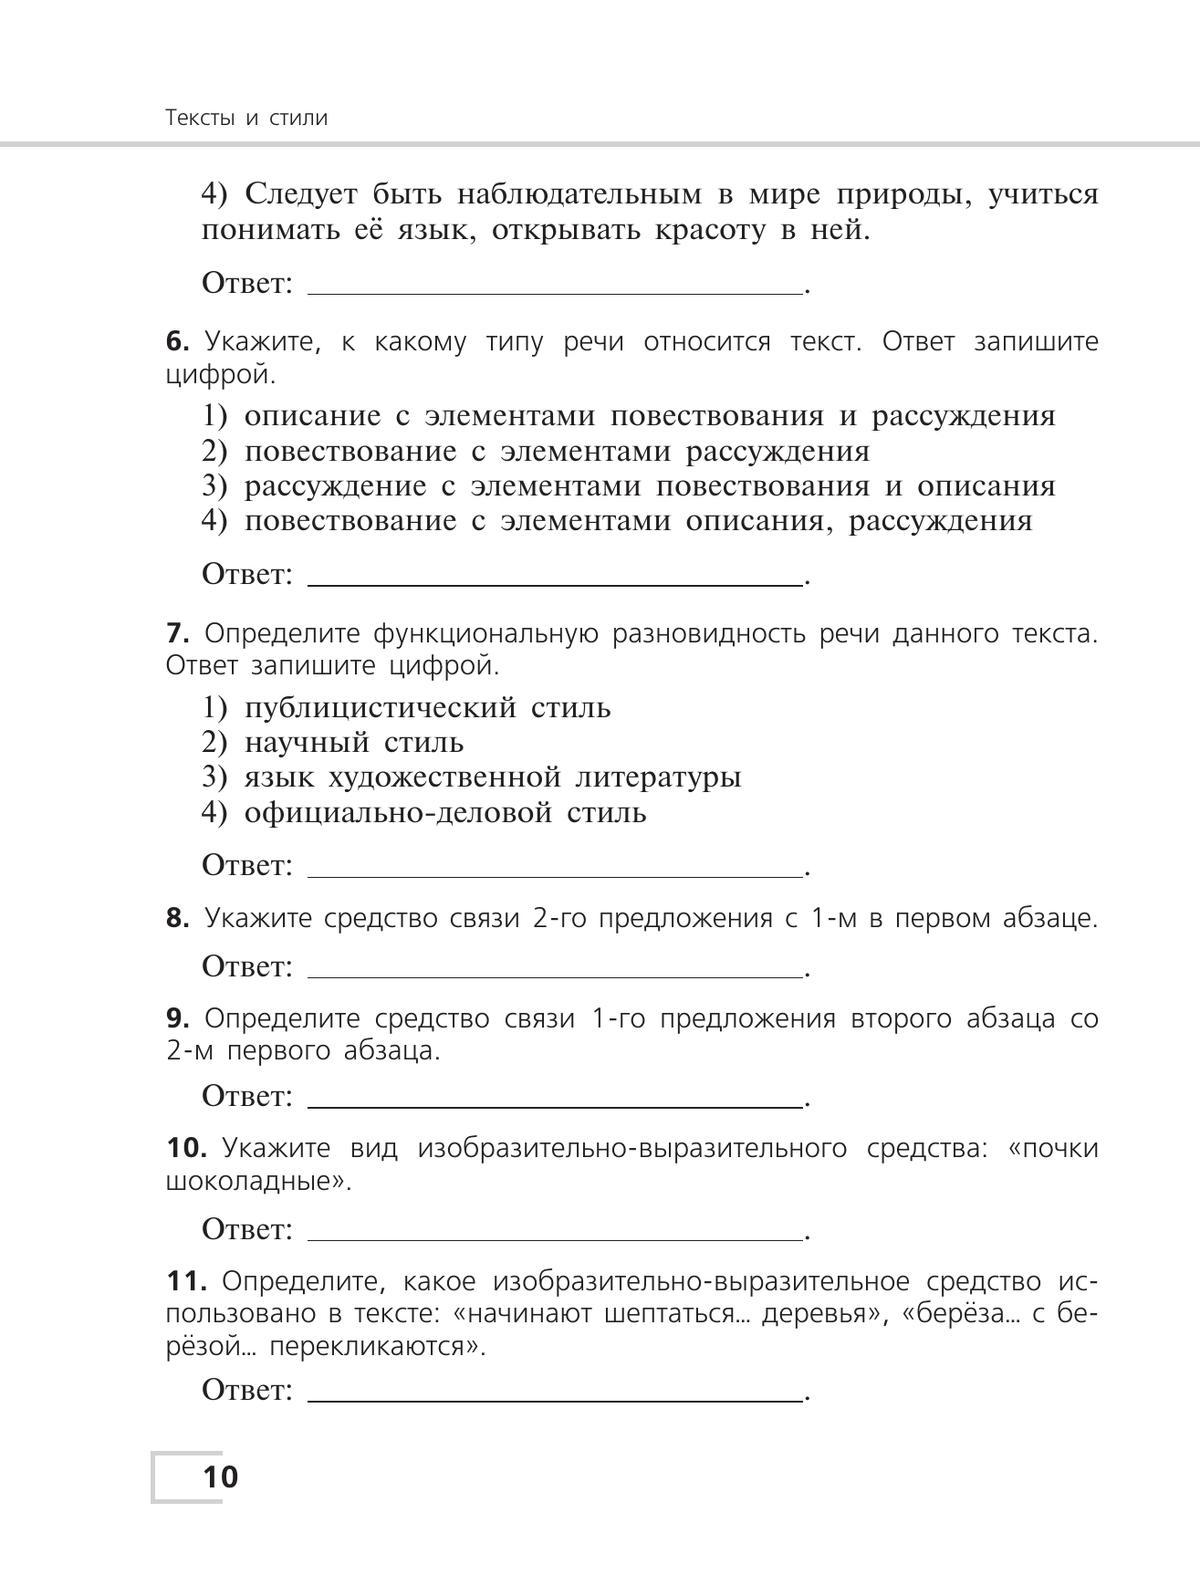 Русский язык. Тематический контроль. 7 класс 10